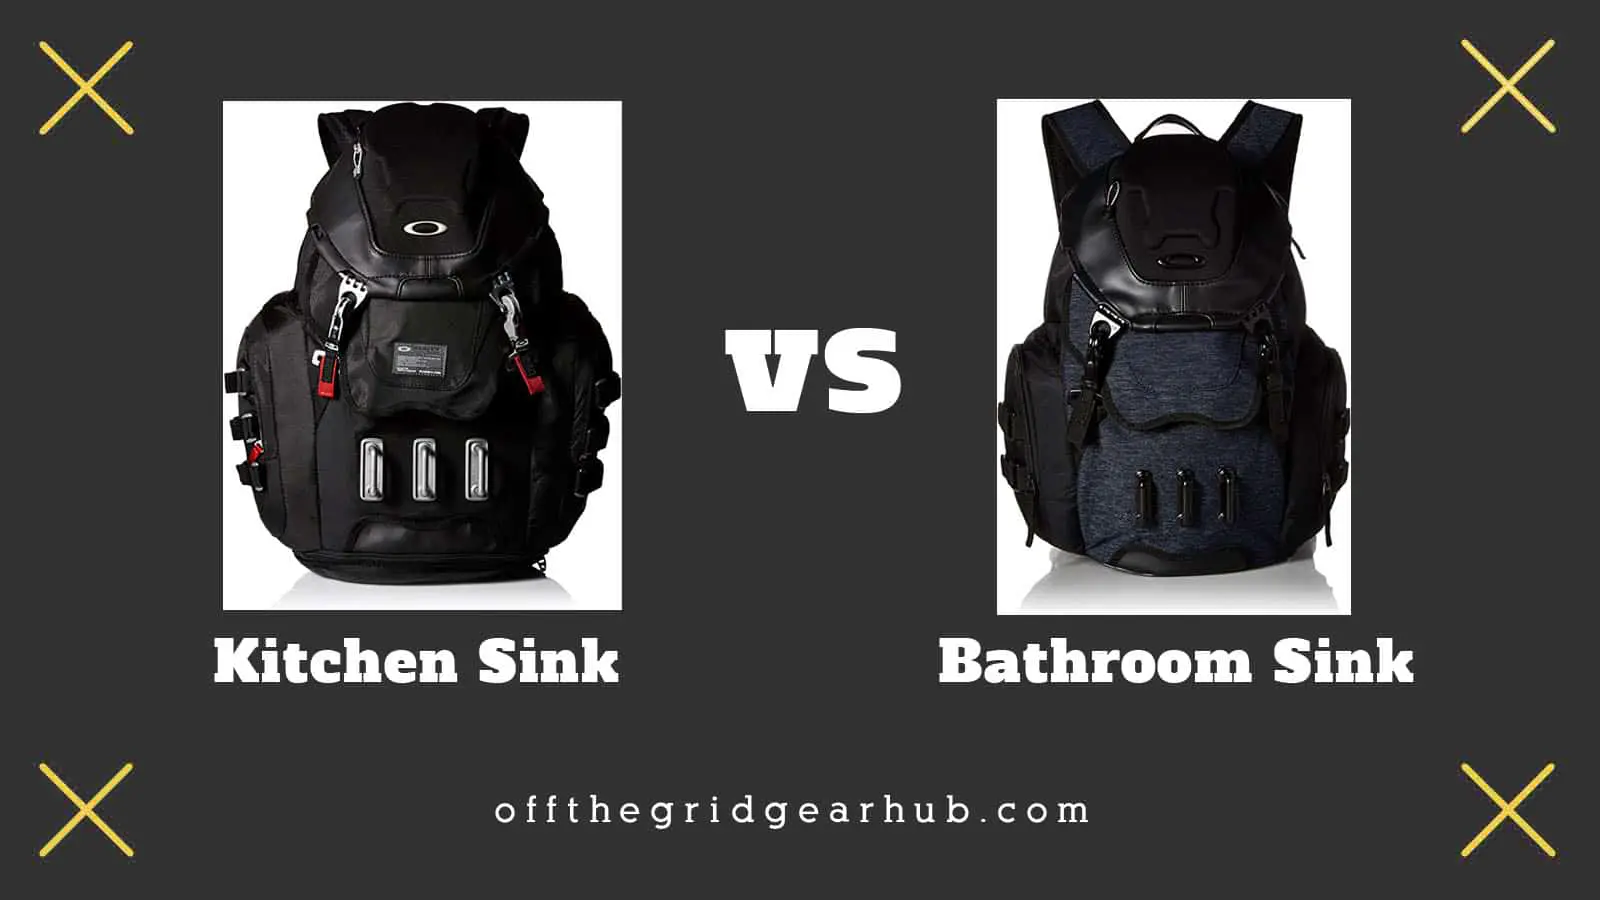 oakley bathroom vs kitchen sink